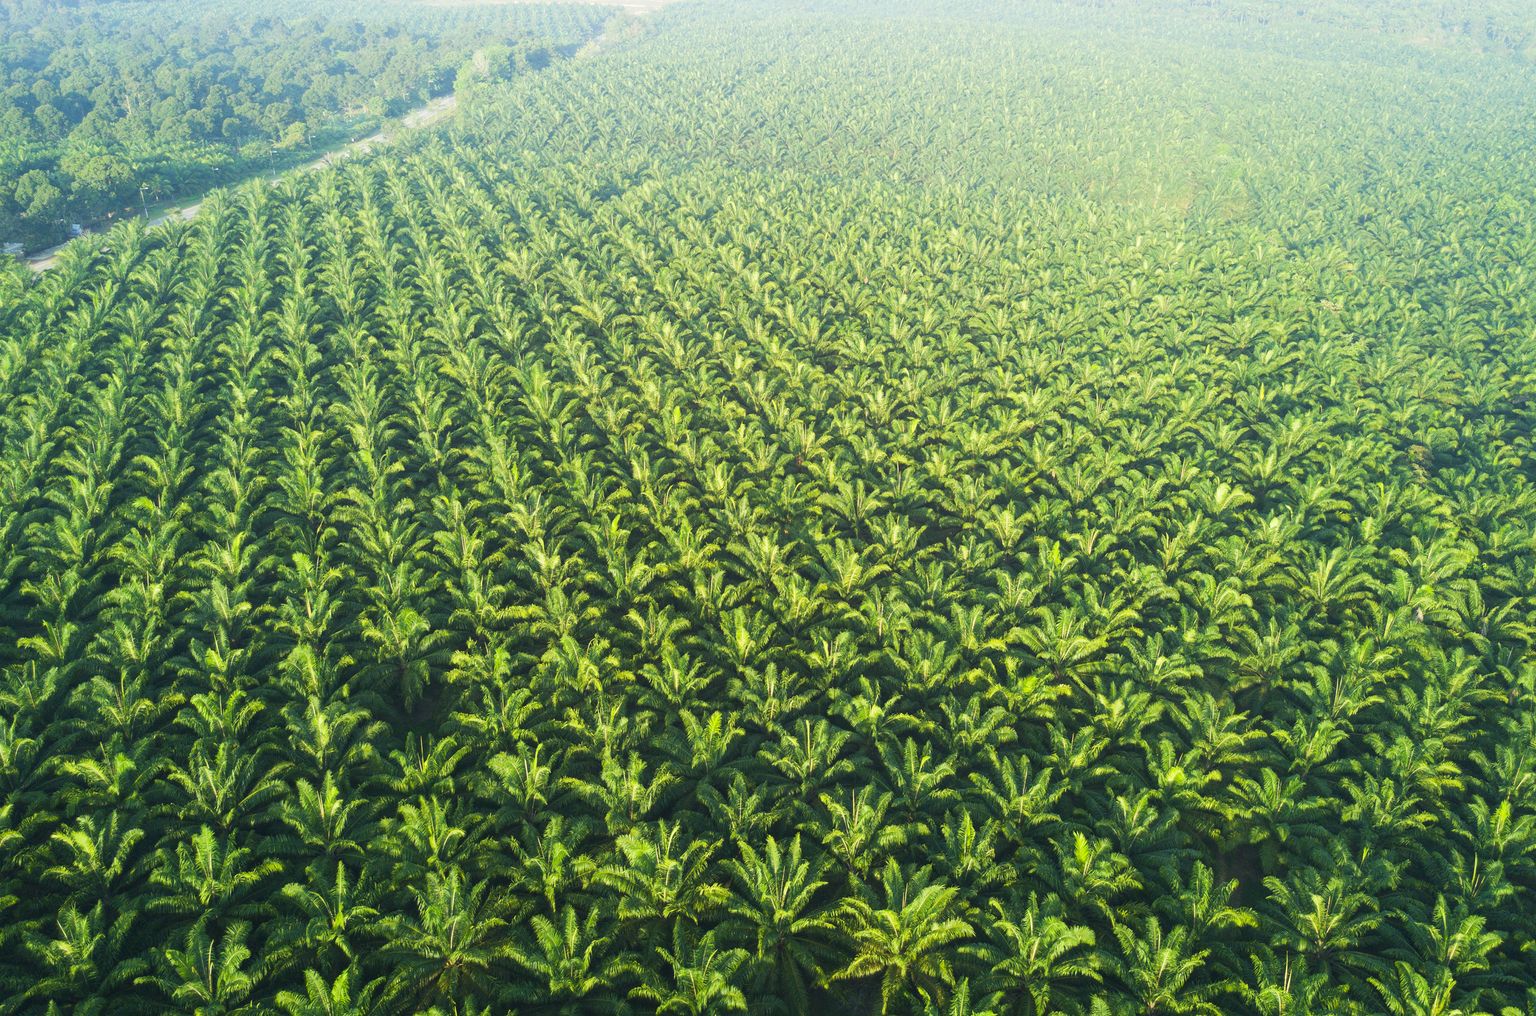 Vista arial de la plantación de palmeras en Asia oriental.